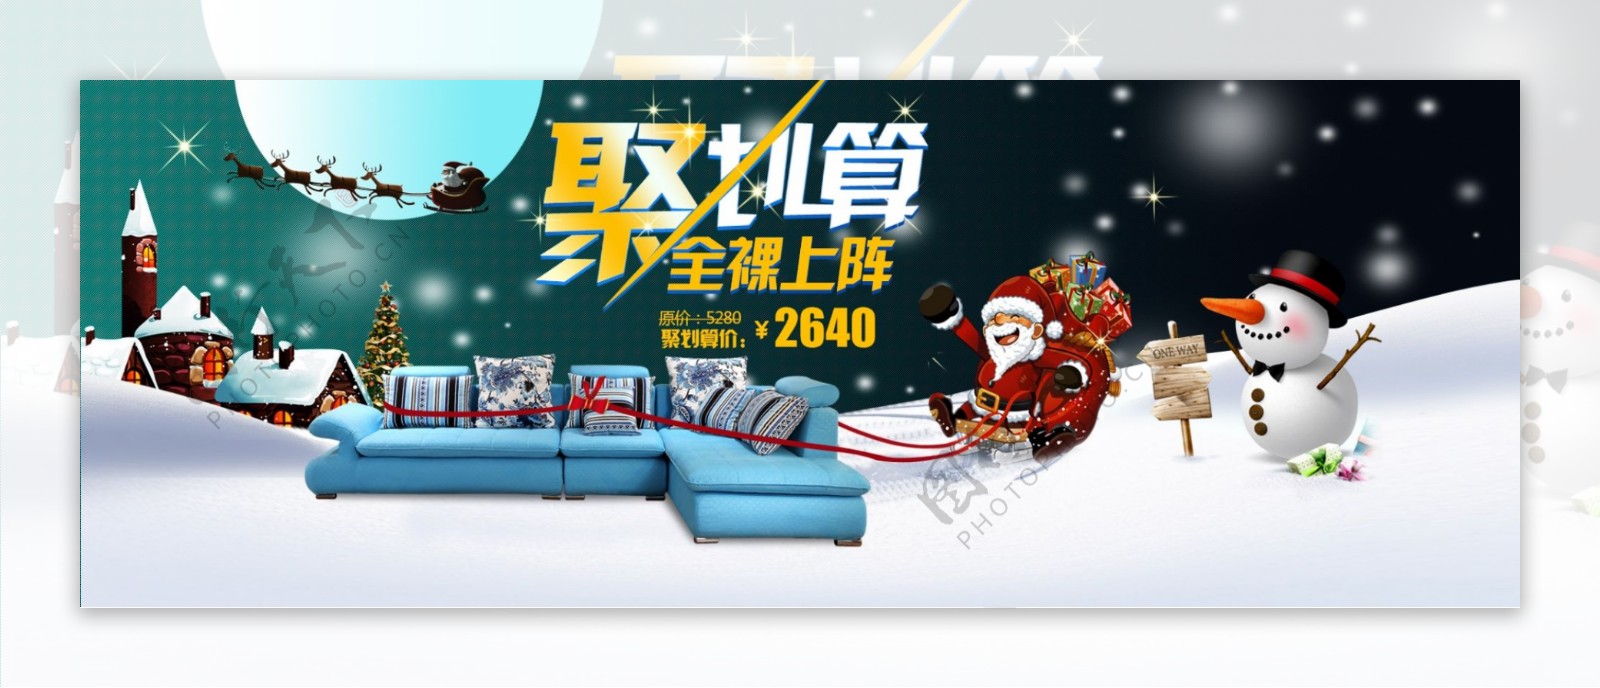 淘宝圣诞节沙发团购海报PSD素材